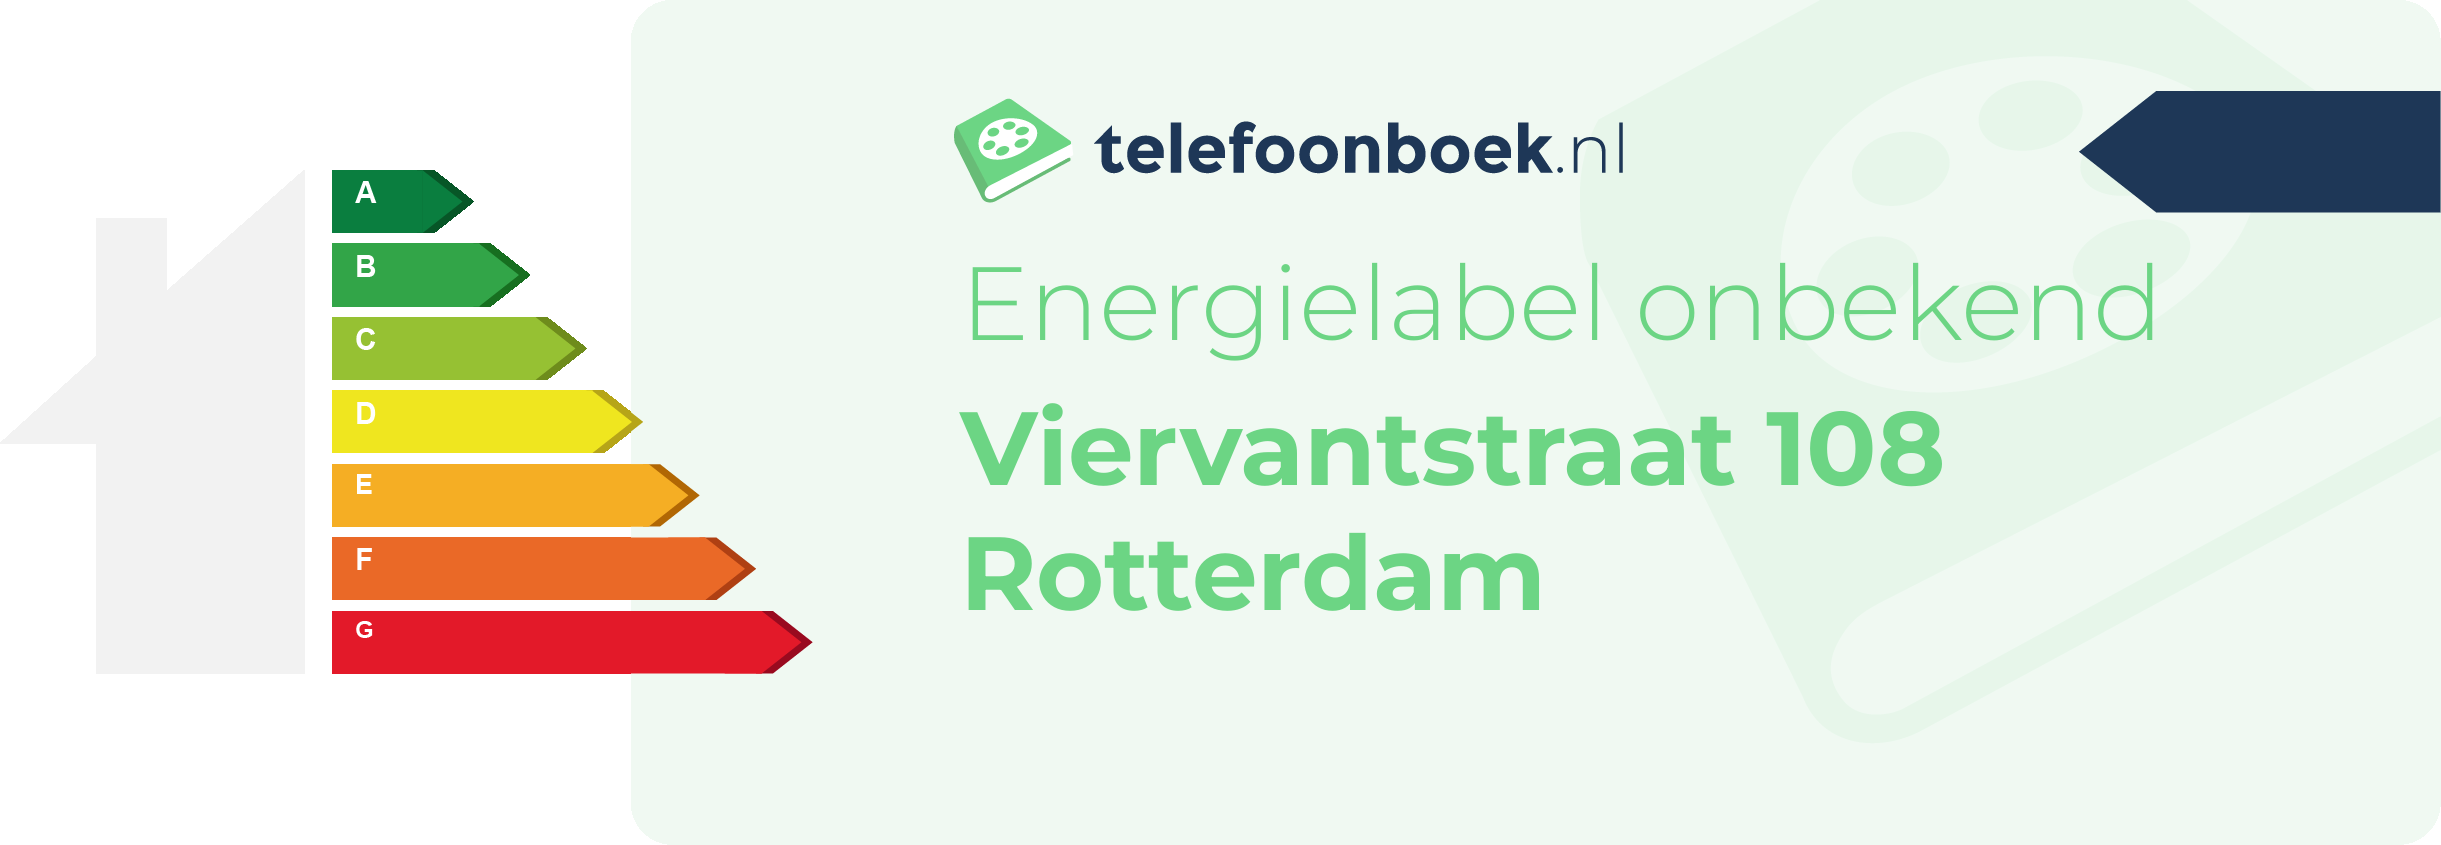 Energielabel Viervantstraat 108 Rotterdam